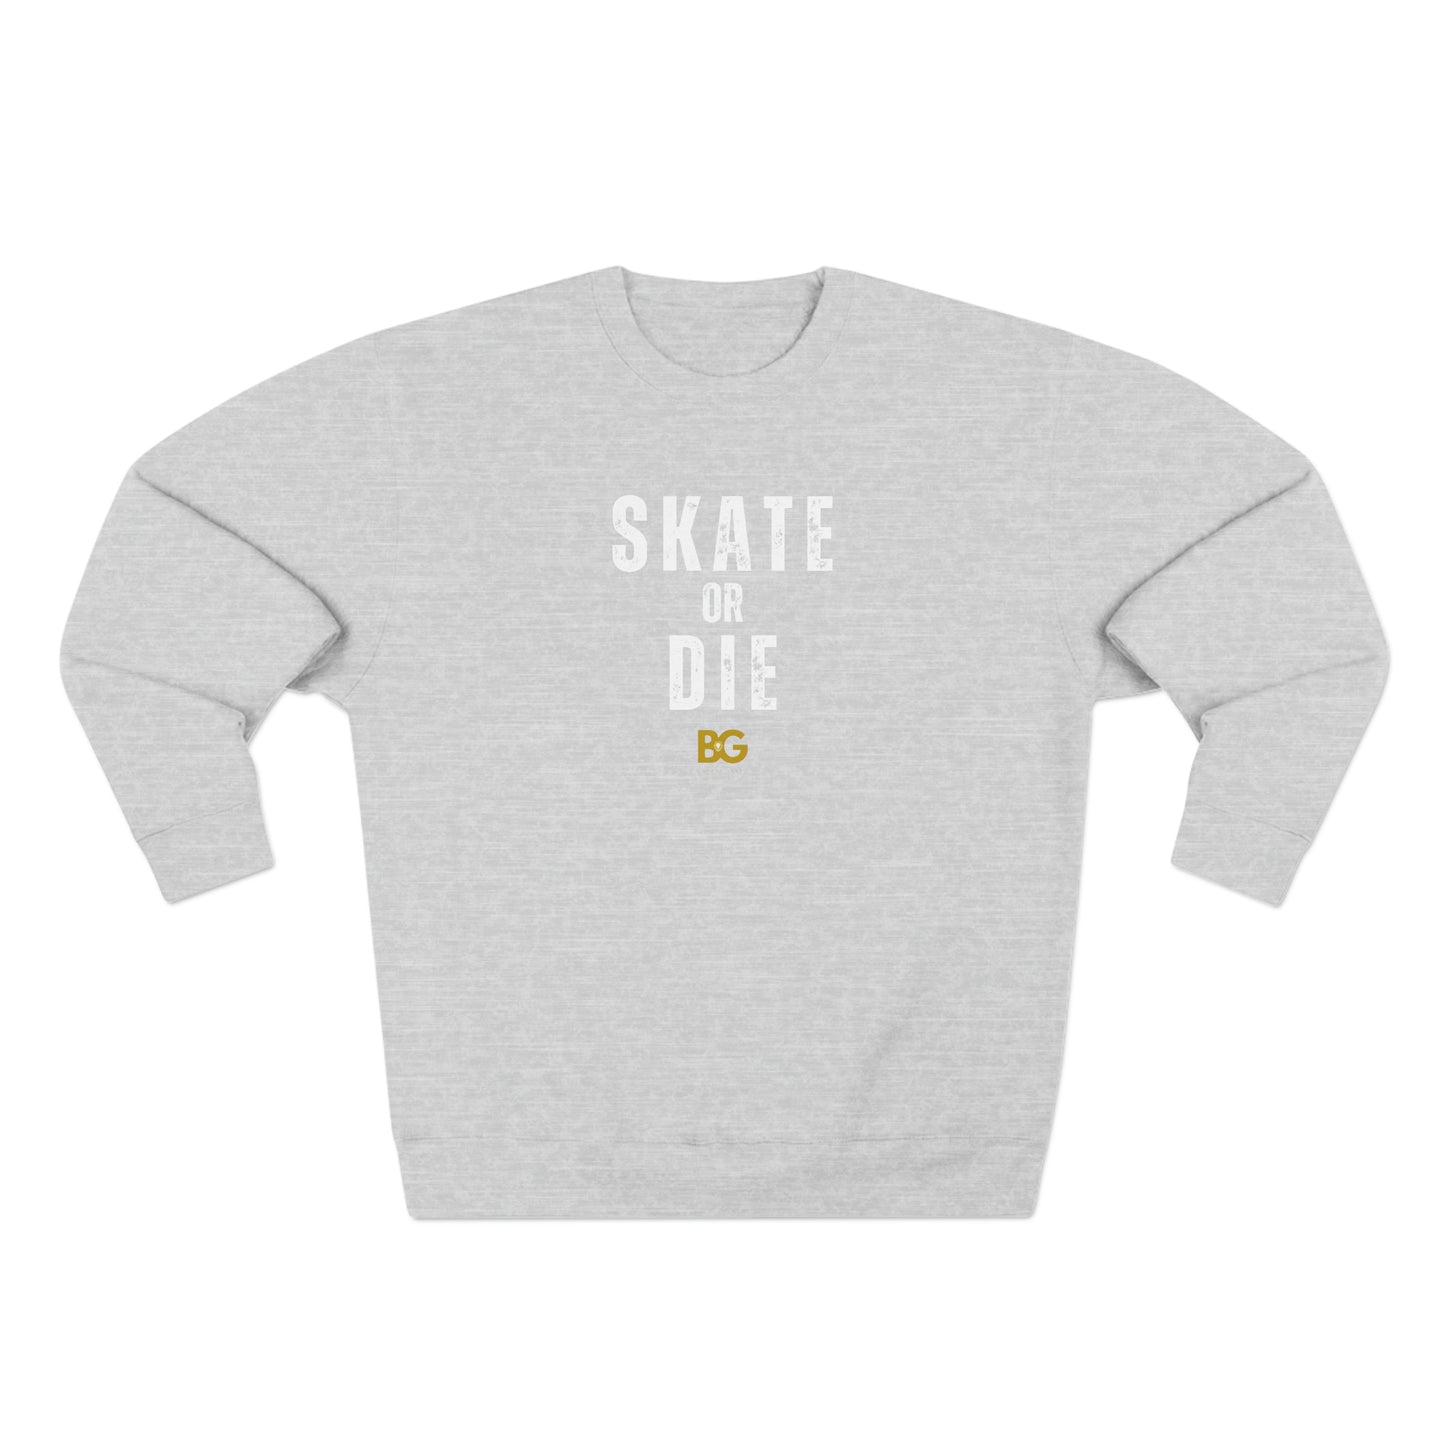 BG "Skate or Die" Premium Crewneck Sweatshirt